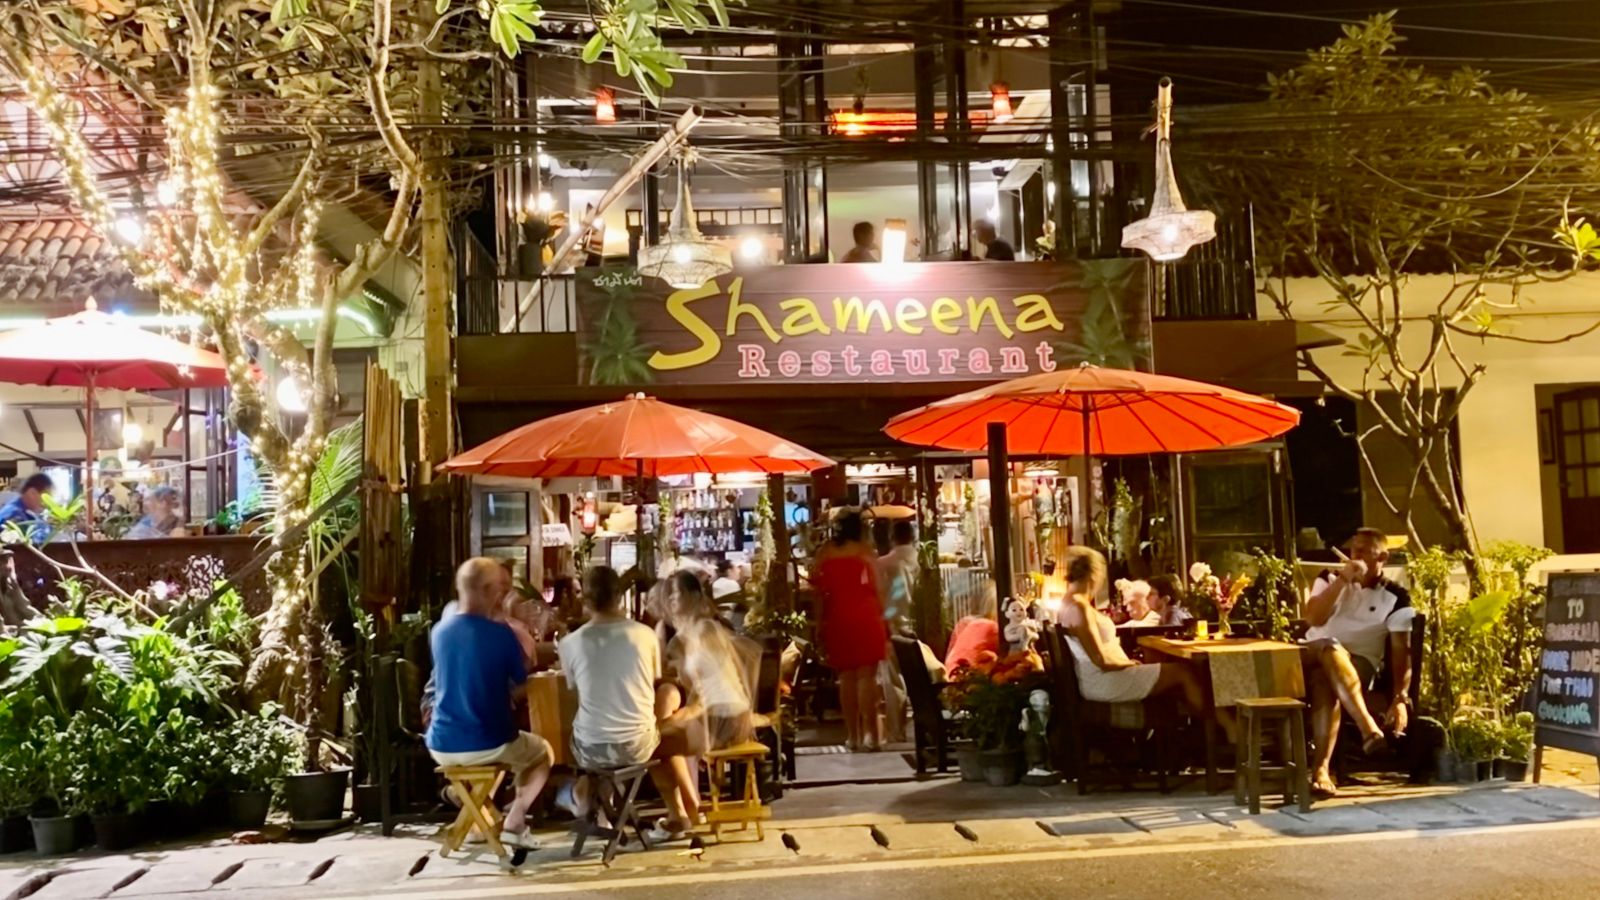 Shameena restaurant, Phuket